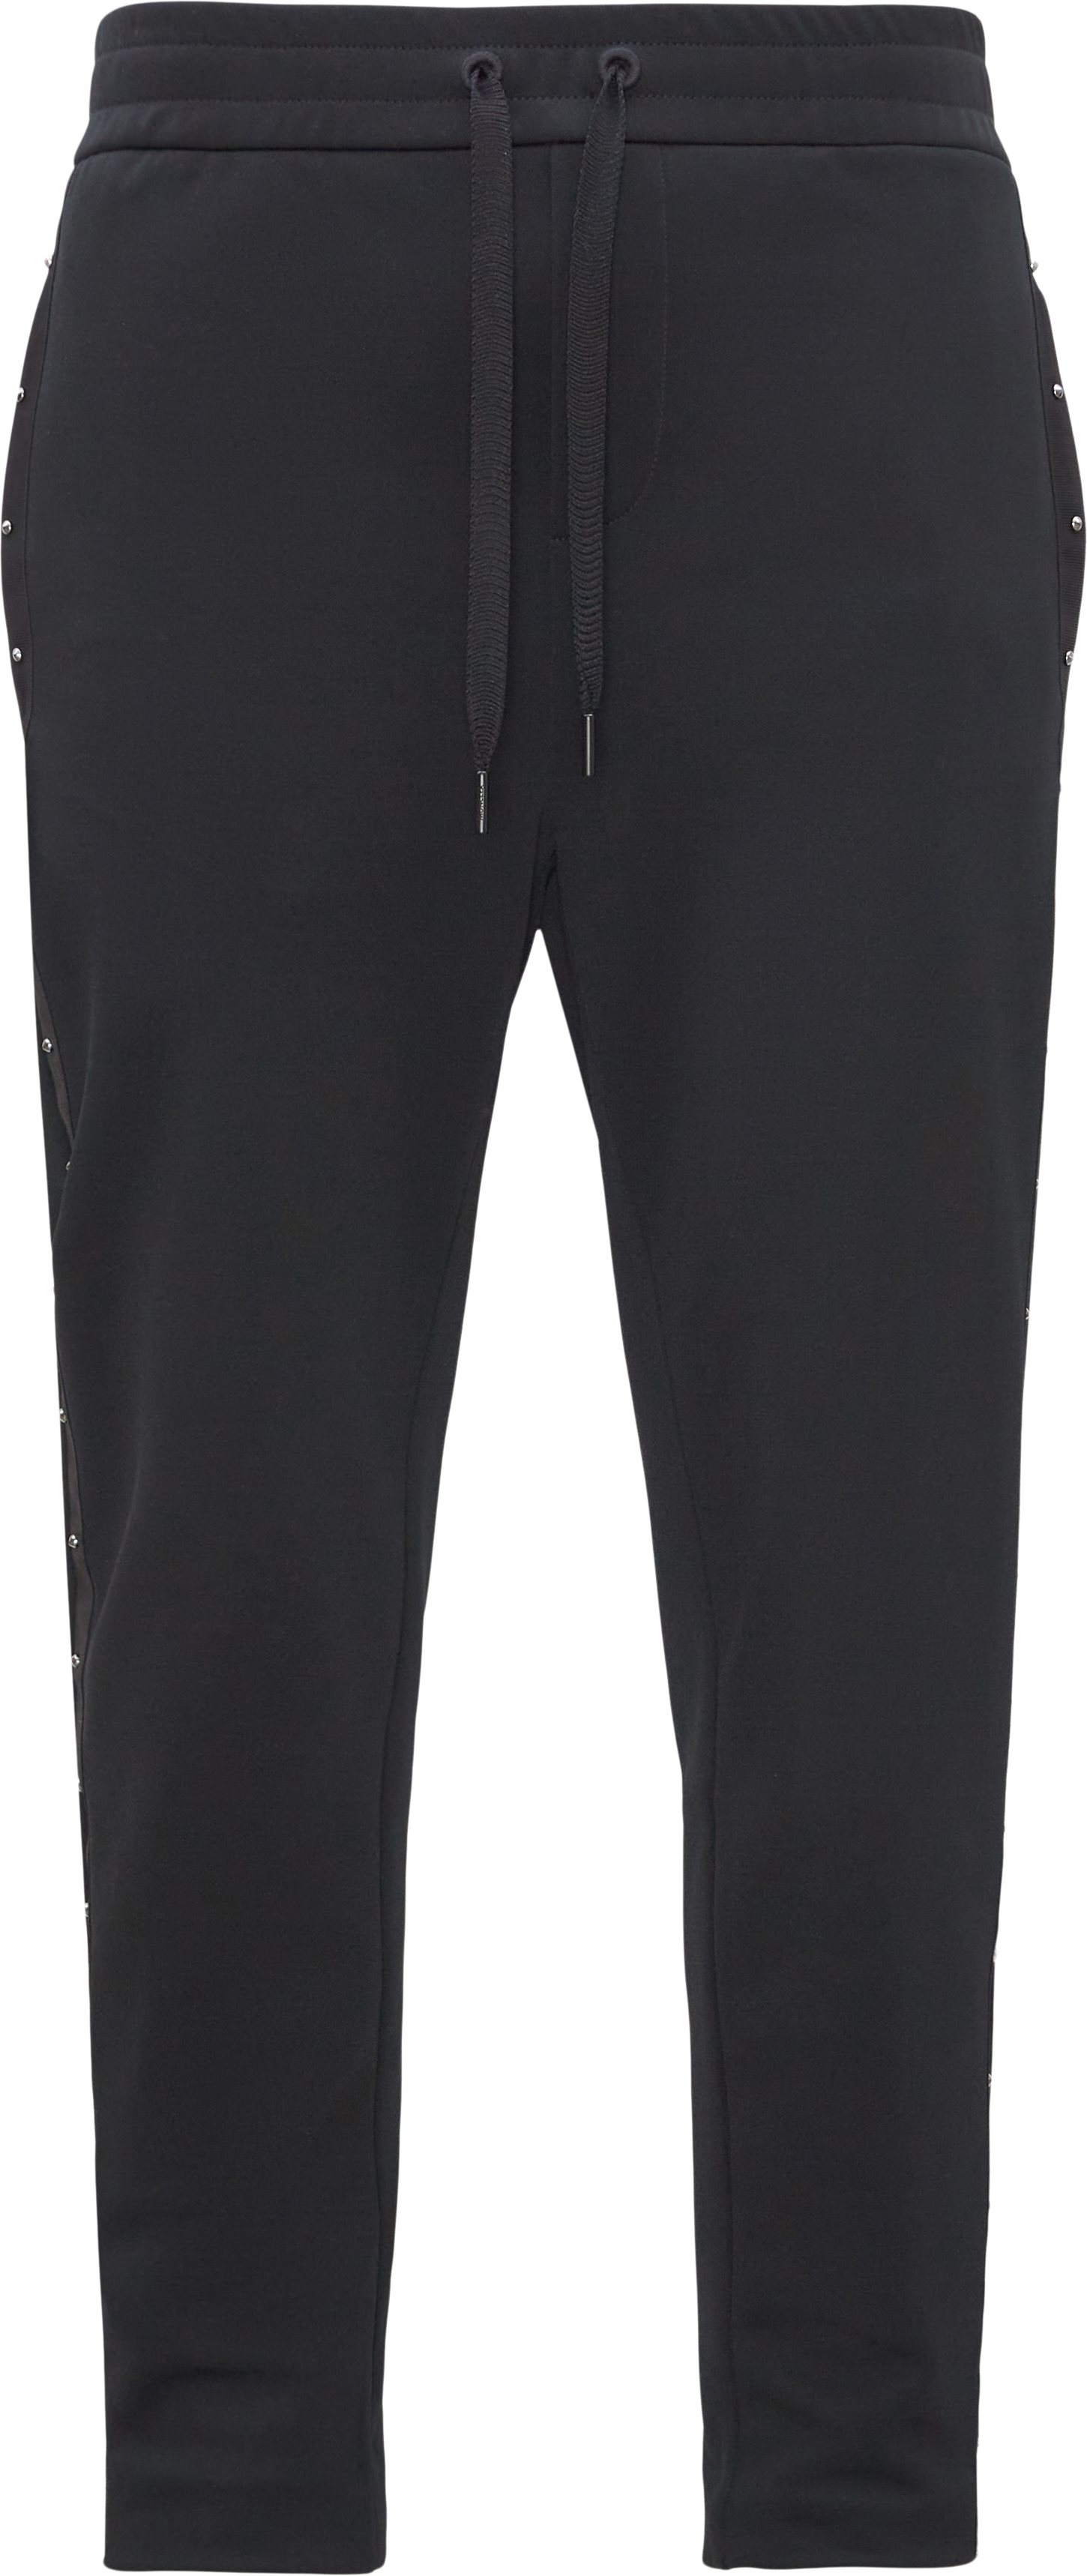 Trousers - Regular fit - Black